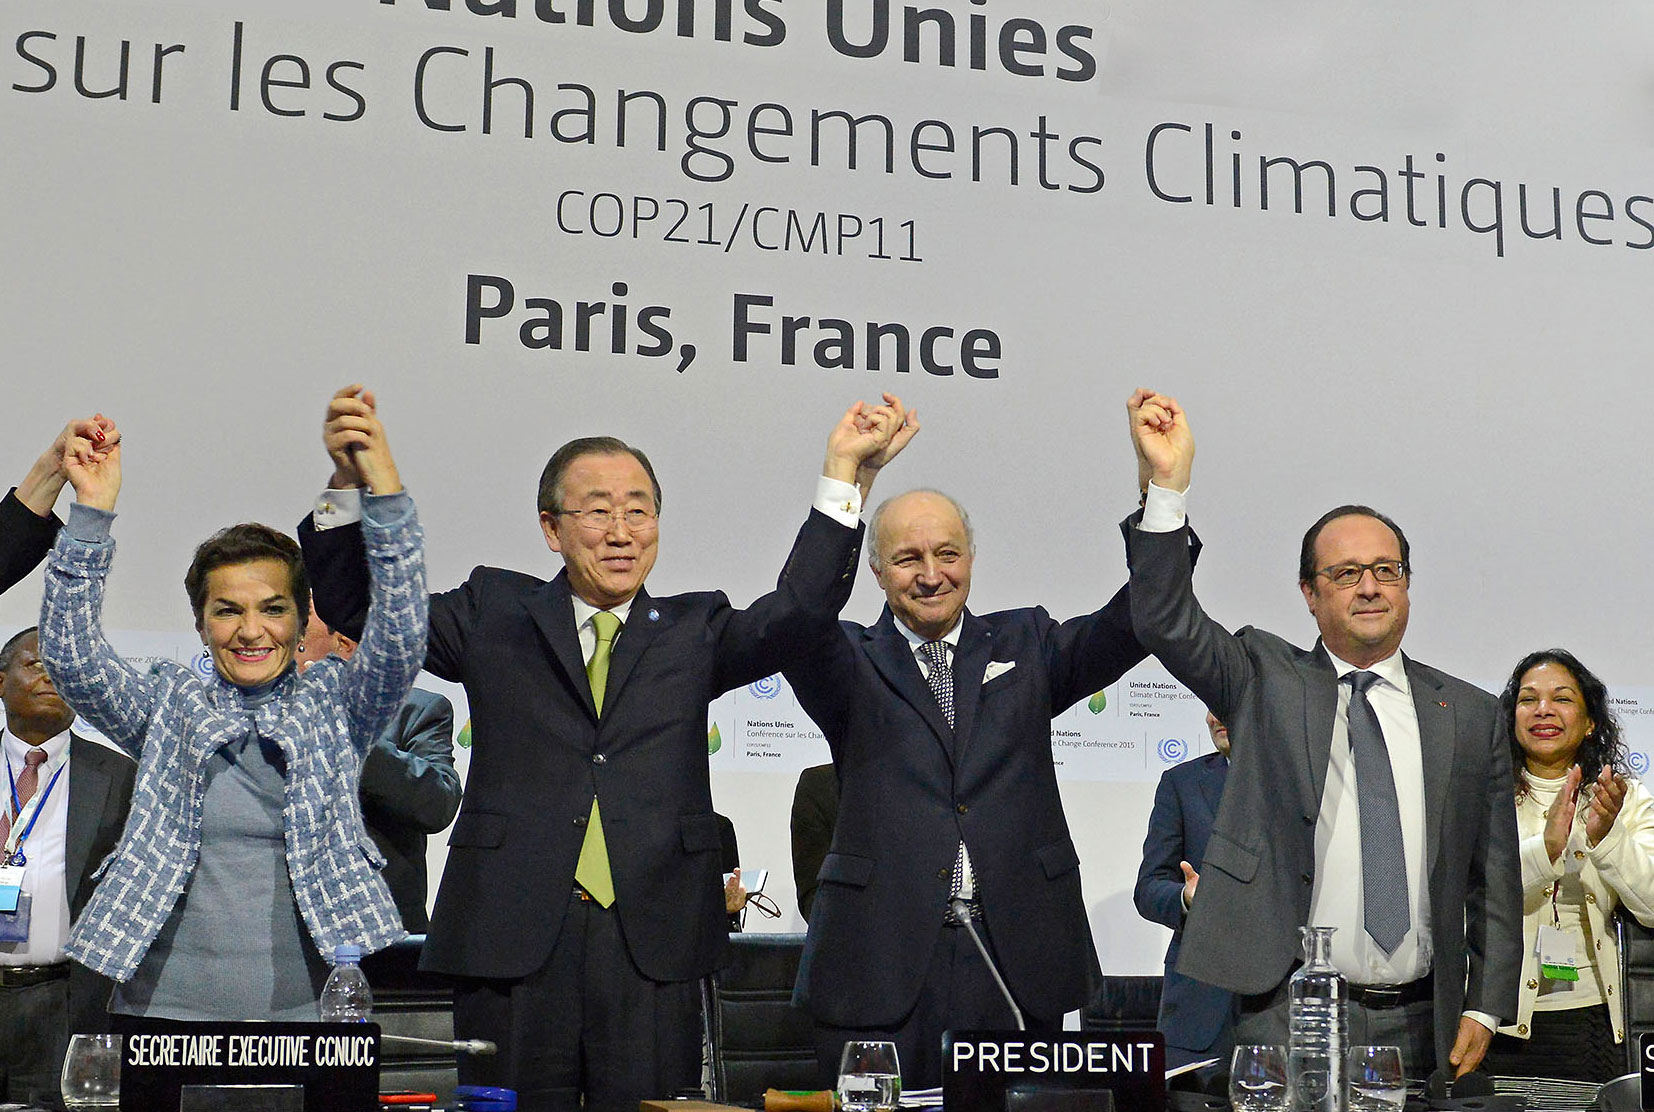 Entrará en vigor el Acuerdo de París sobre Cambio Climático el 4 de noviembre